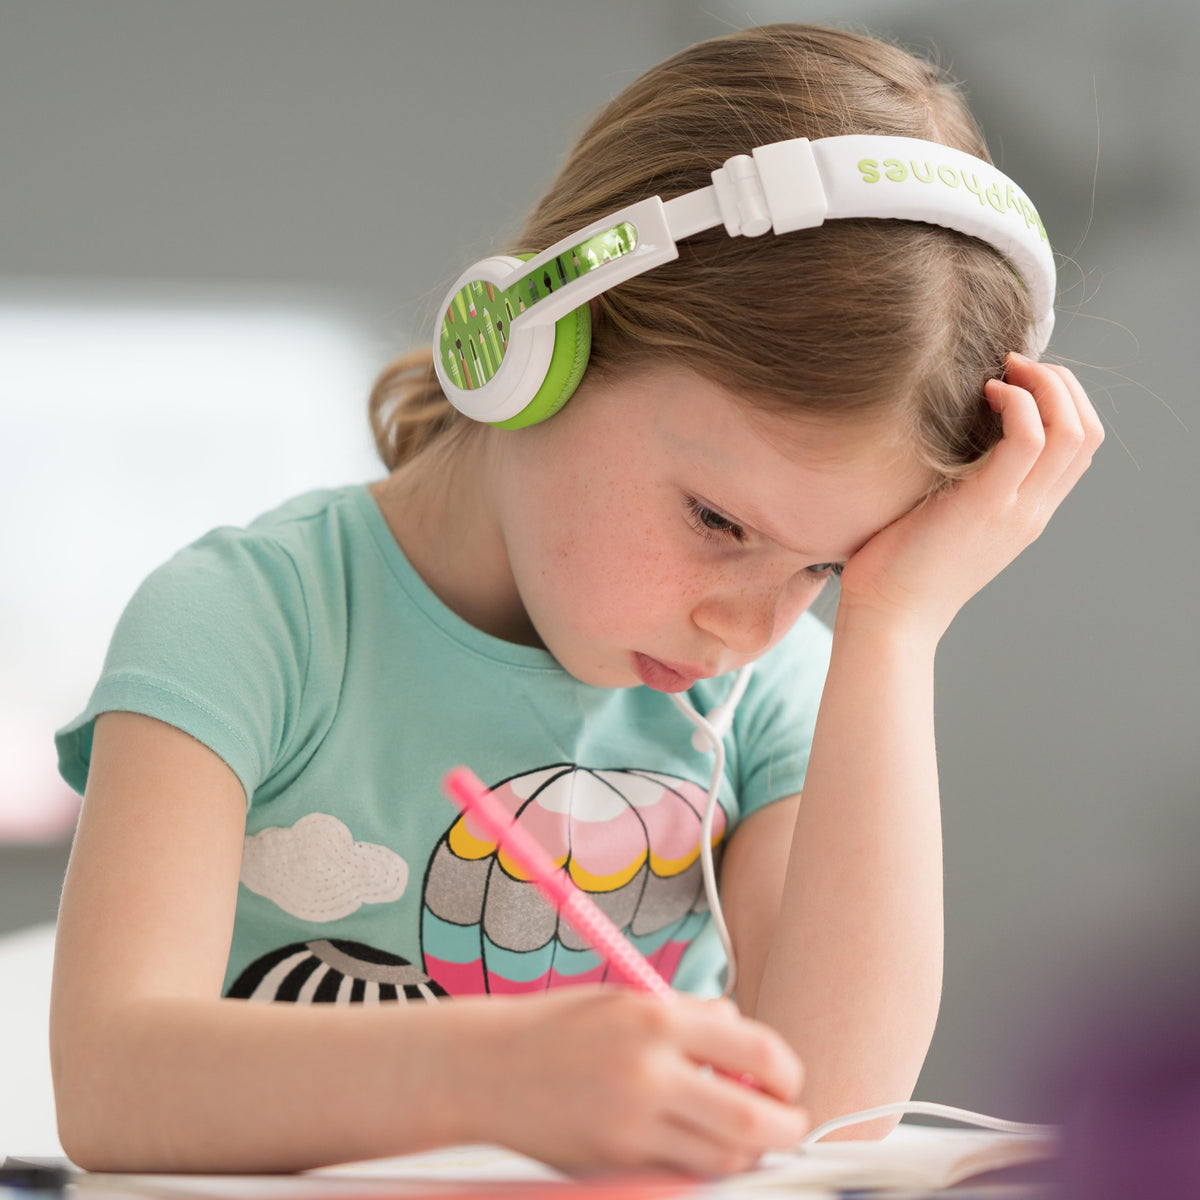 BUDDYPHONES School Plus Headphones - Green